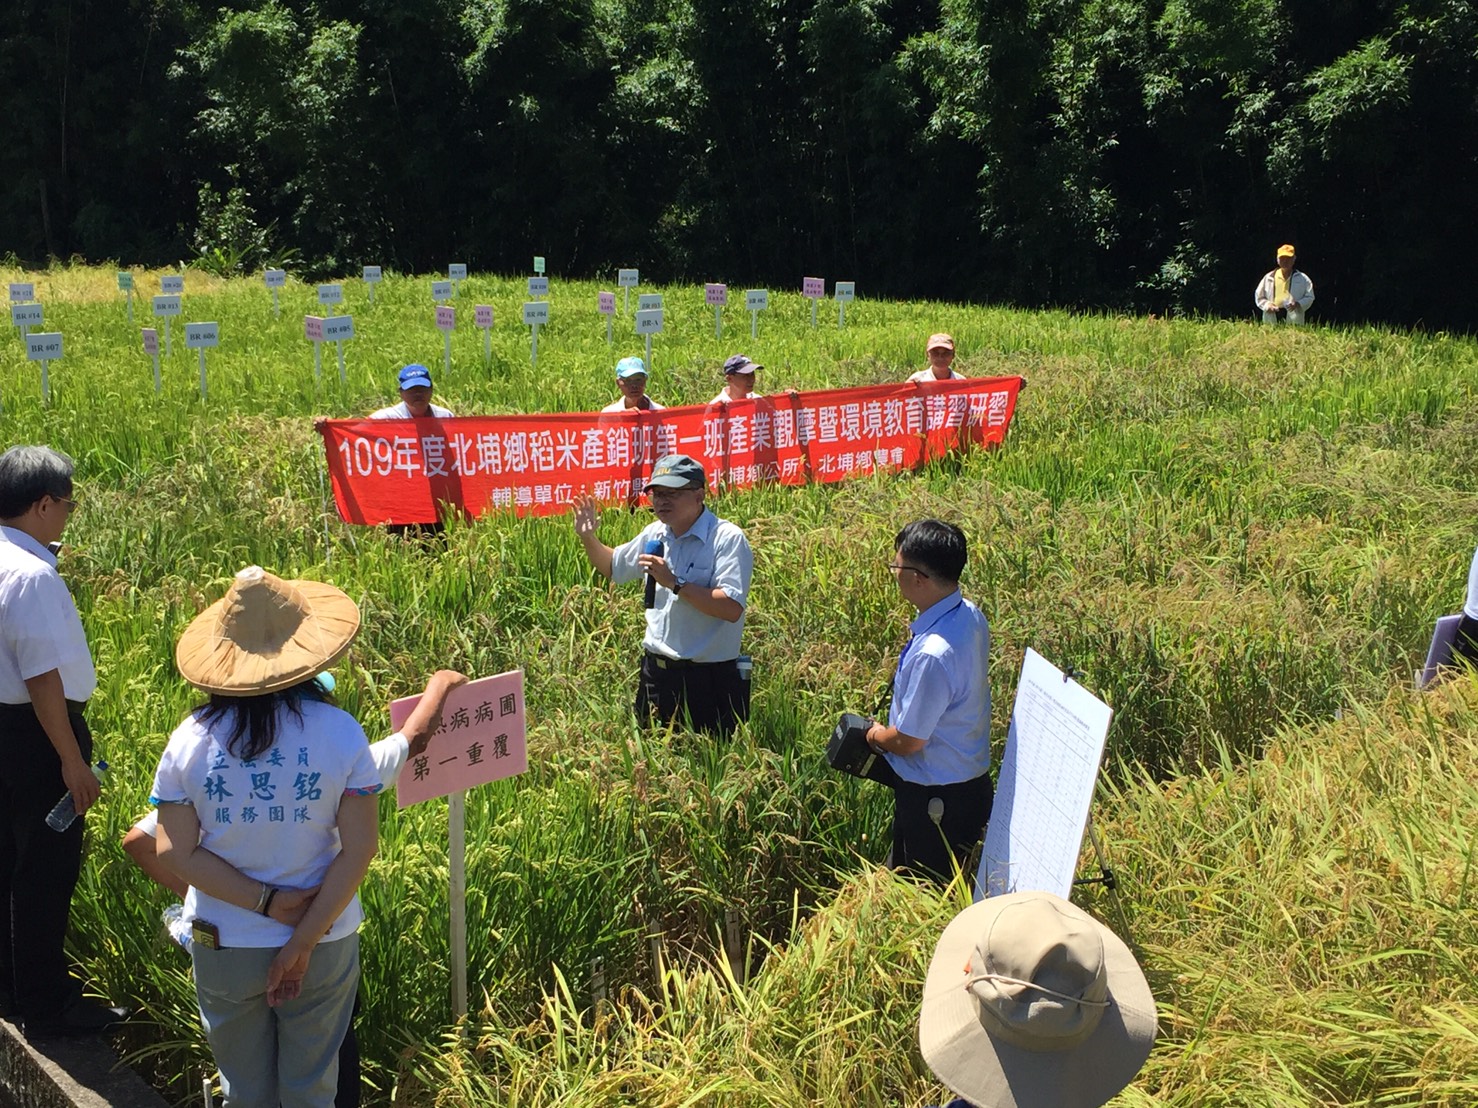 本場簡禎佑副研究員在水稻品種桃園3號抗病試驗田區說明試驗成果。